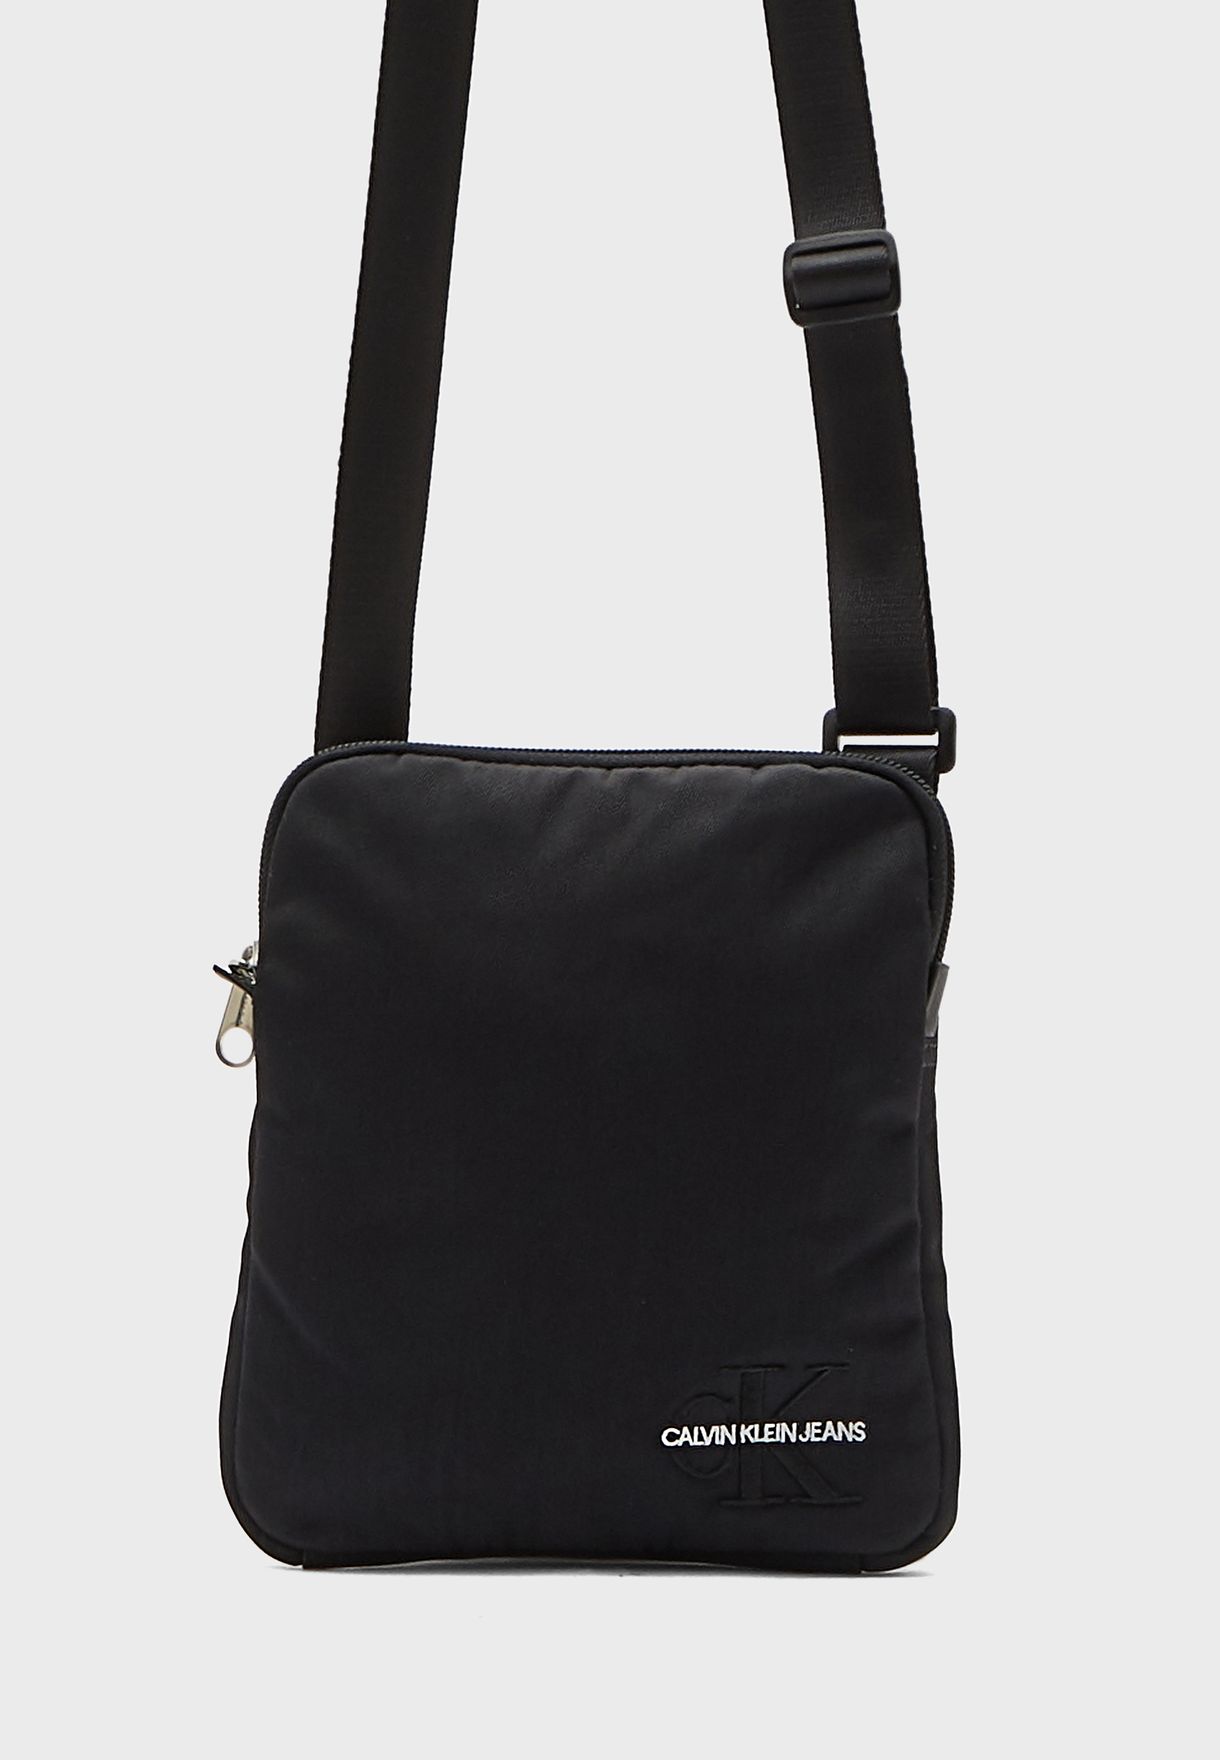 moeilijk tevreden te krijgen kort Geval Buy Calvin Klein Jeans black Monogram Logo Messenger Bag for Men in MENA,  Worldwide